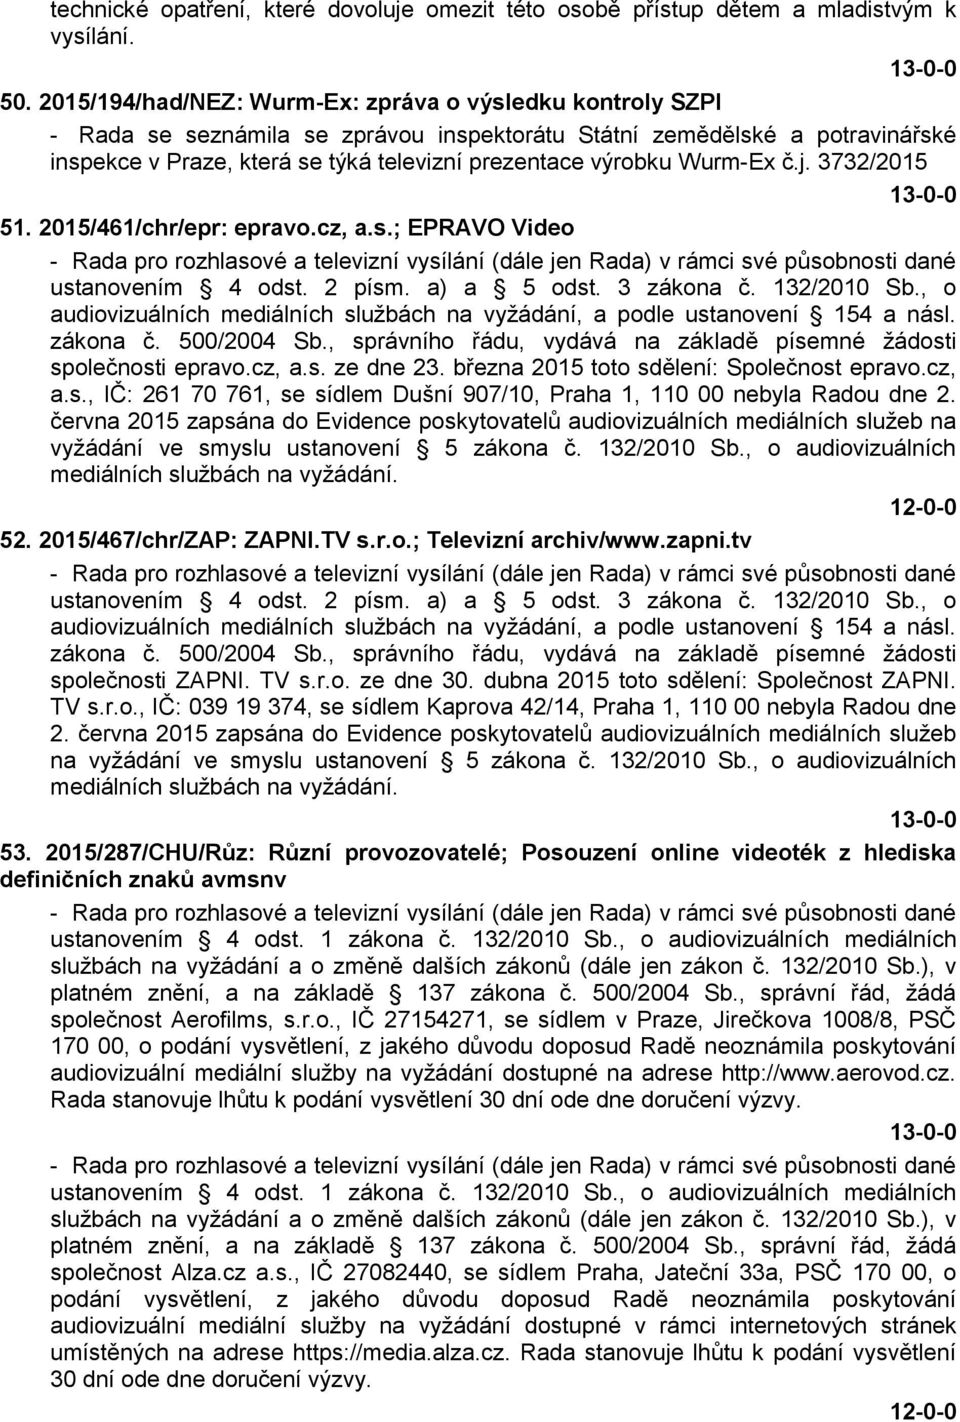 Wurm-Ex č.j. 3732/2015 51. 2015/461/chr/epr: epravo.cz, a.s.; EPRAVO Video ustanovením 4 odst. 2 písm. a) a 5 odst. 3 zákona č. 132/2010 Sb.